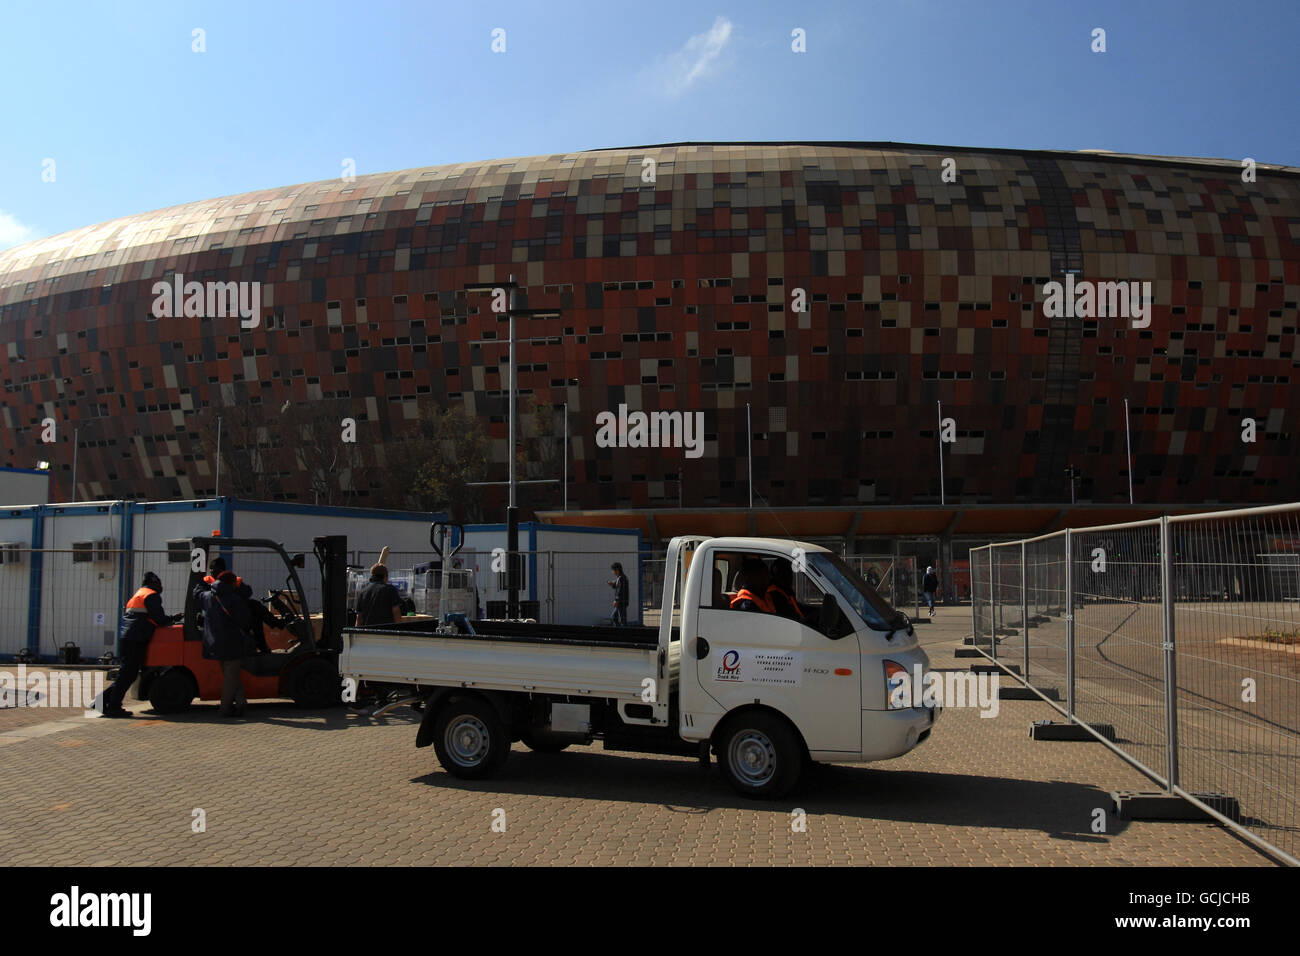 Les travaux de nettoyage se poursuivent au stade de Soccer City, à Johannesburg, la veille de la cérémonie d'ouverture Banque D'Images